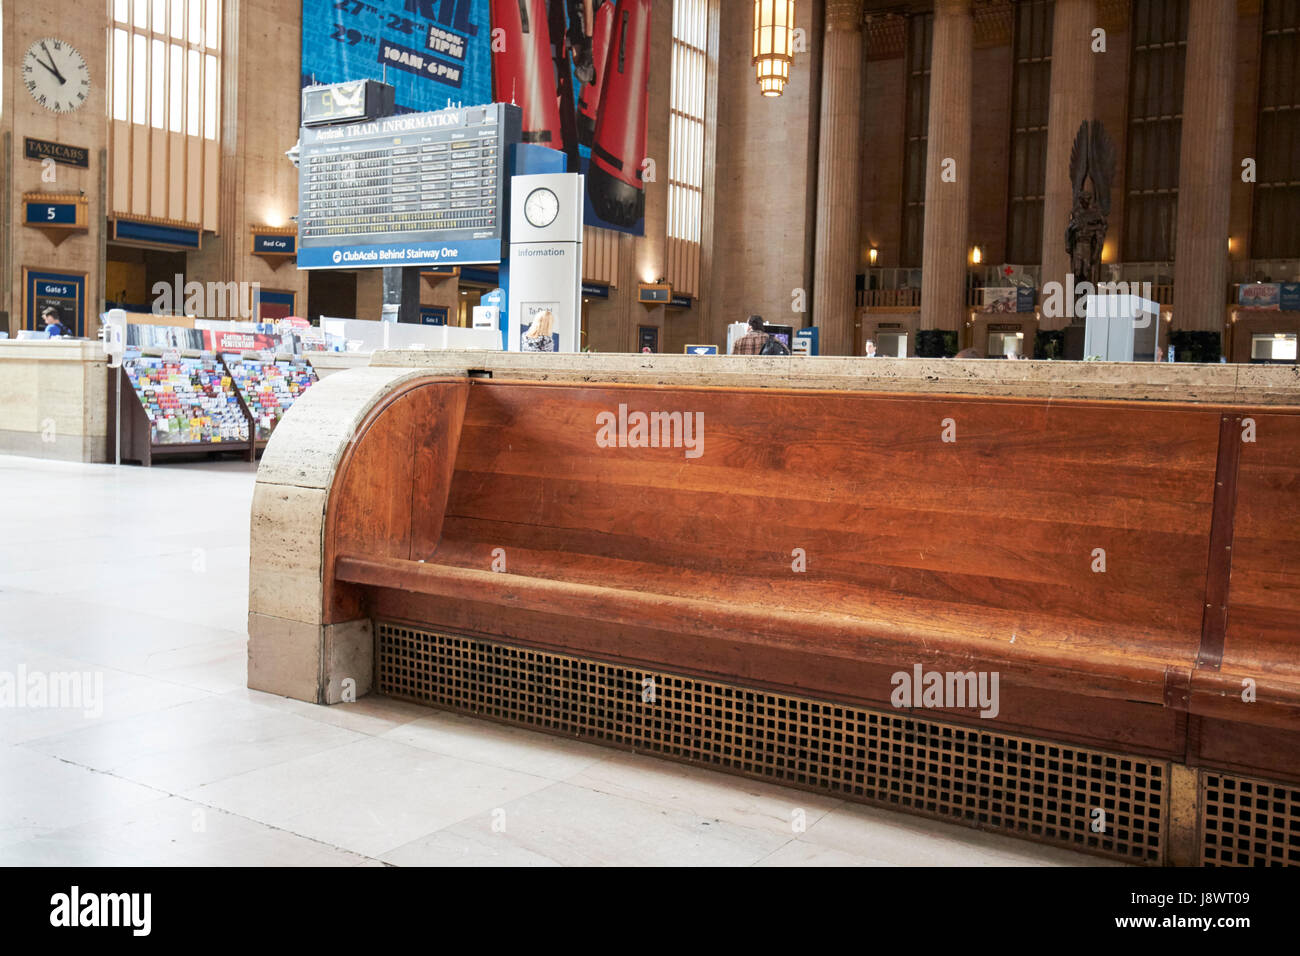 Las bancas largas de madera en la sala de espera principal dentro de los septos estación de tren 30th street Filadelfia, EE.UU. Foto de stock